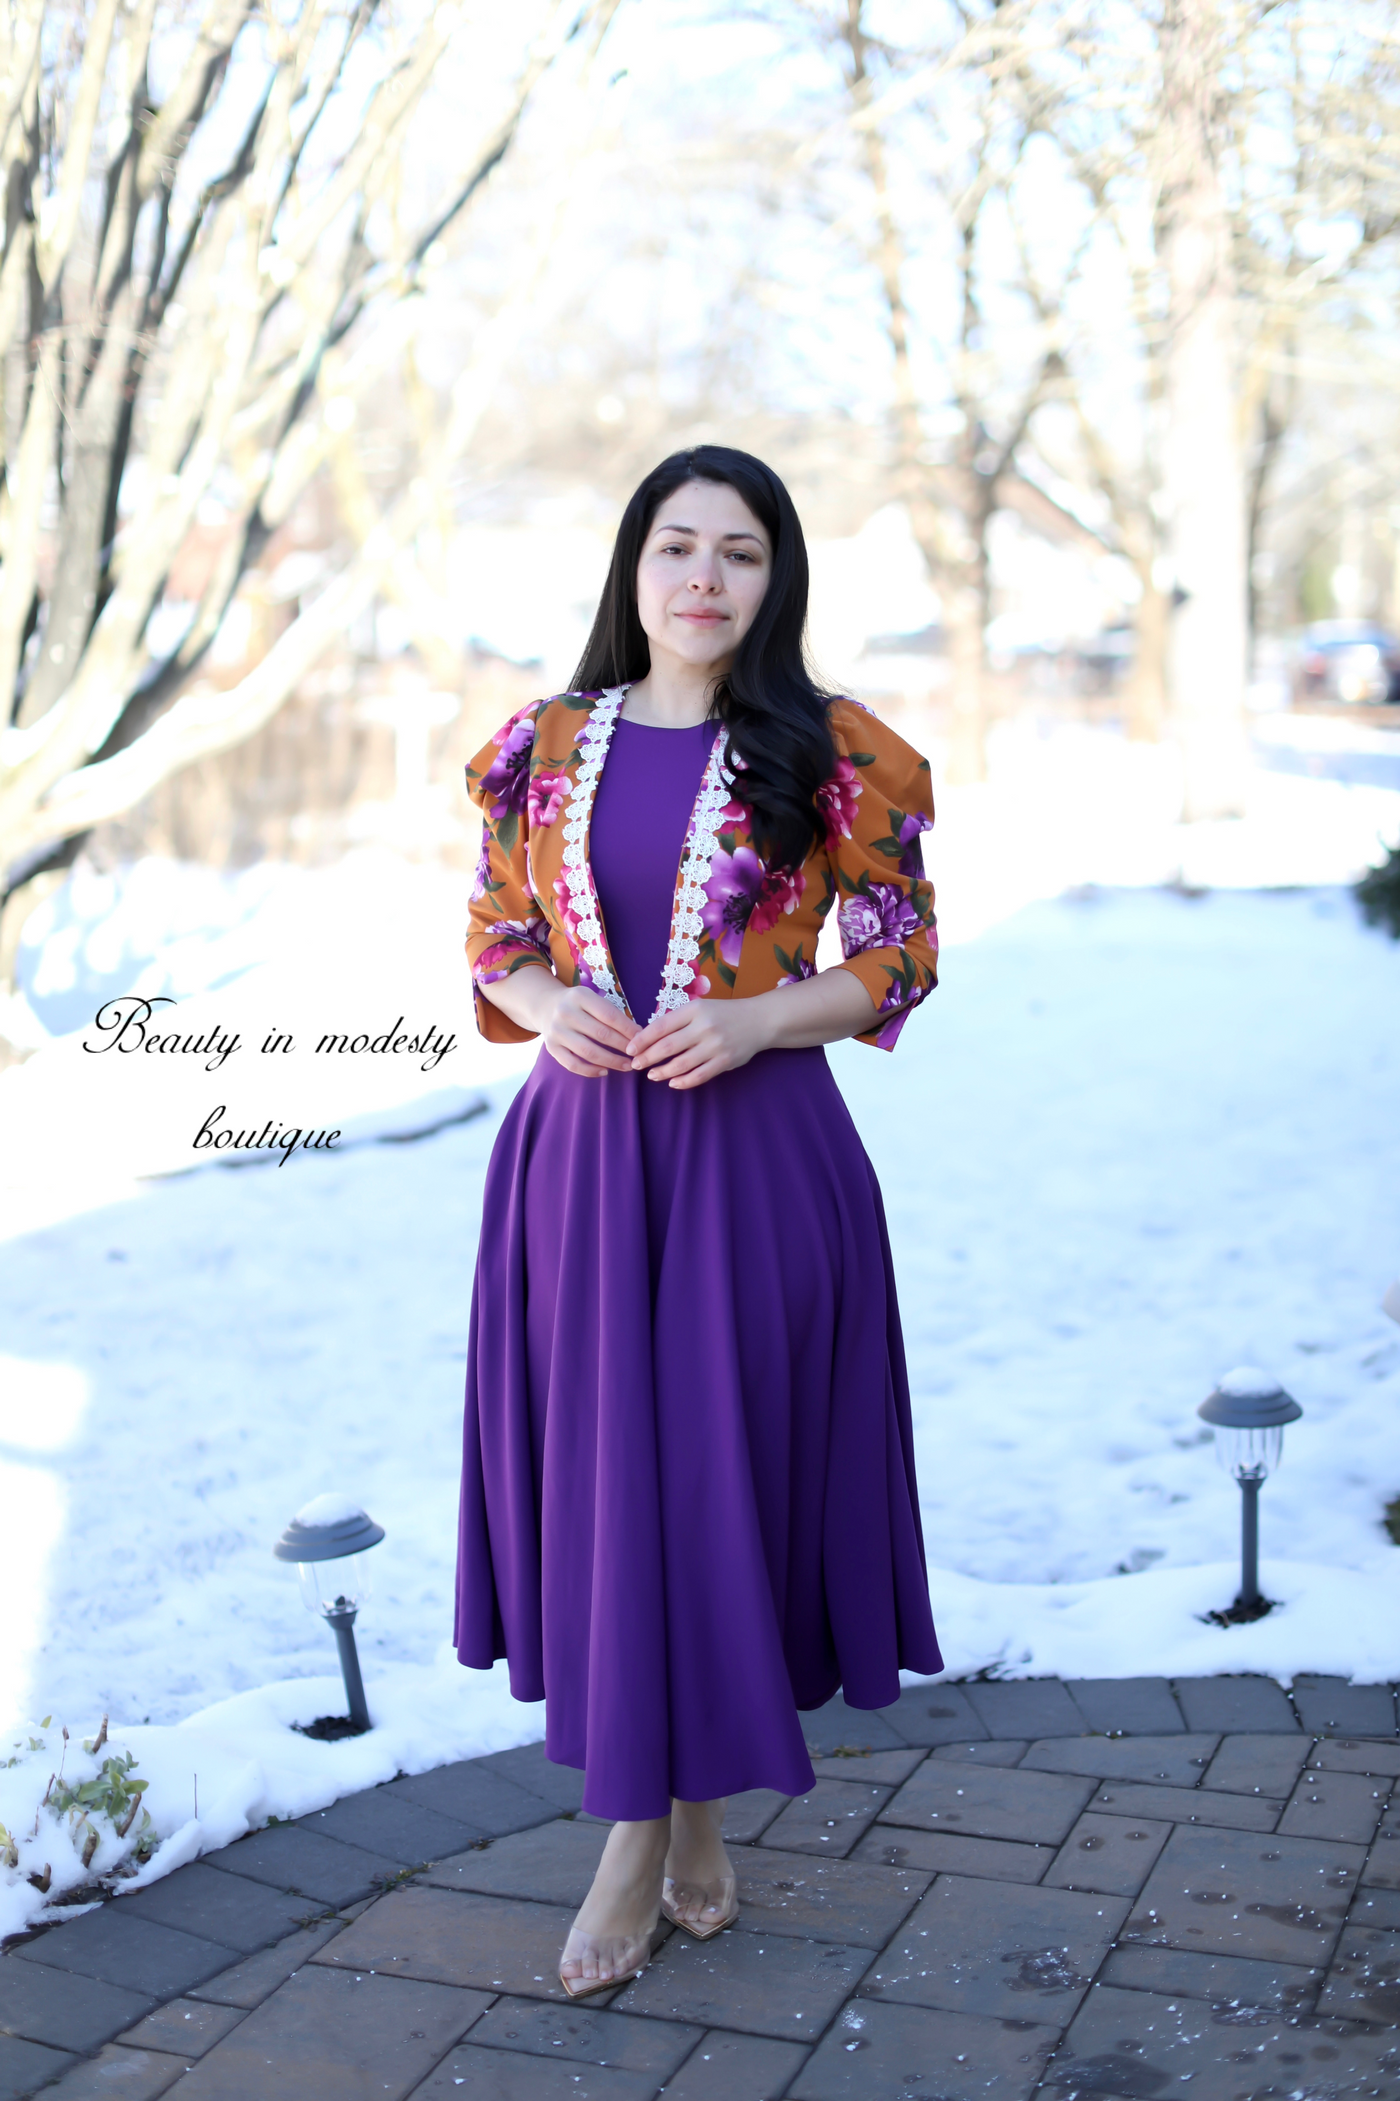 Davinia Mustard / Purple Maxi Dress